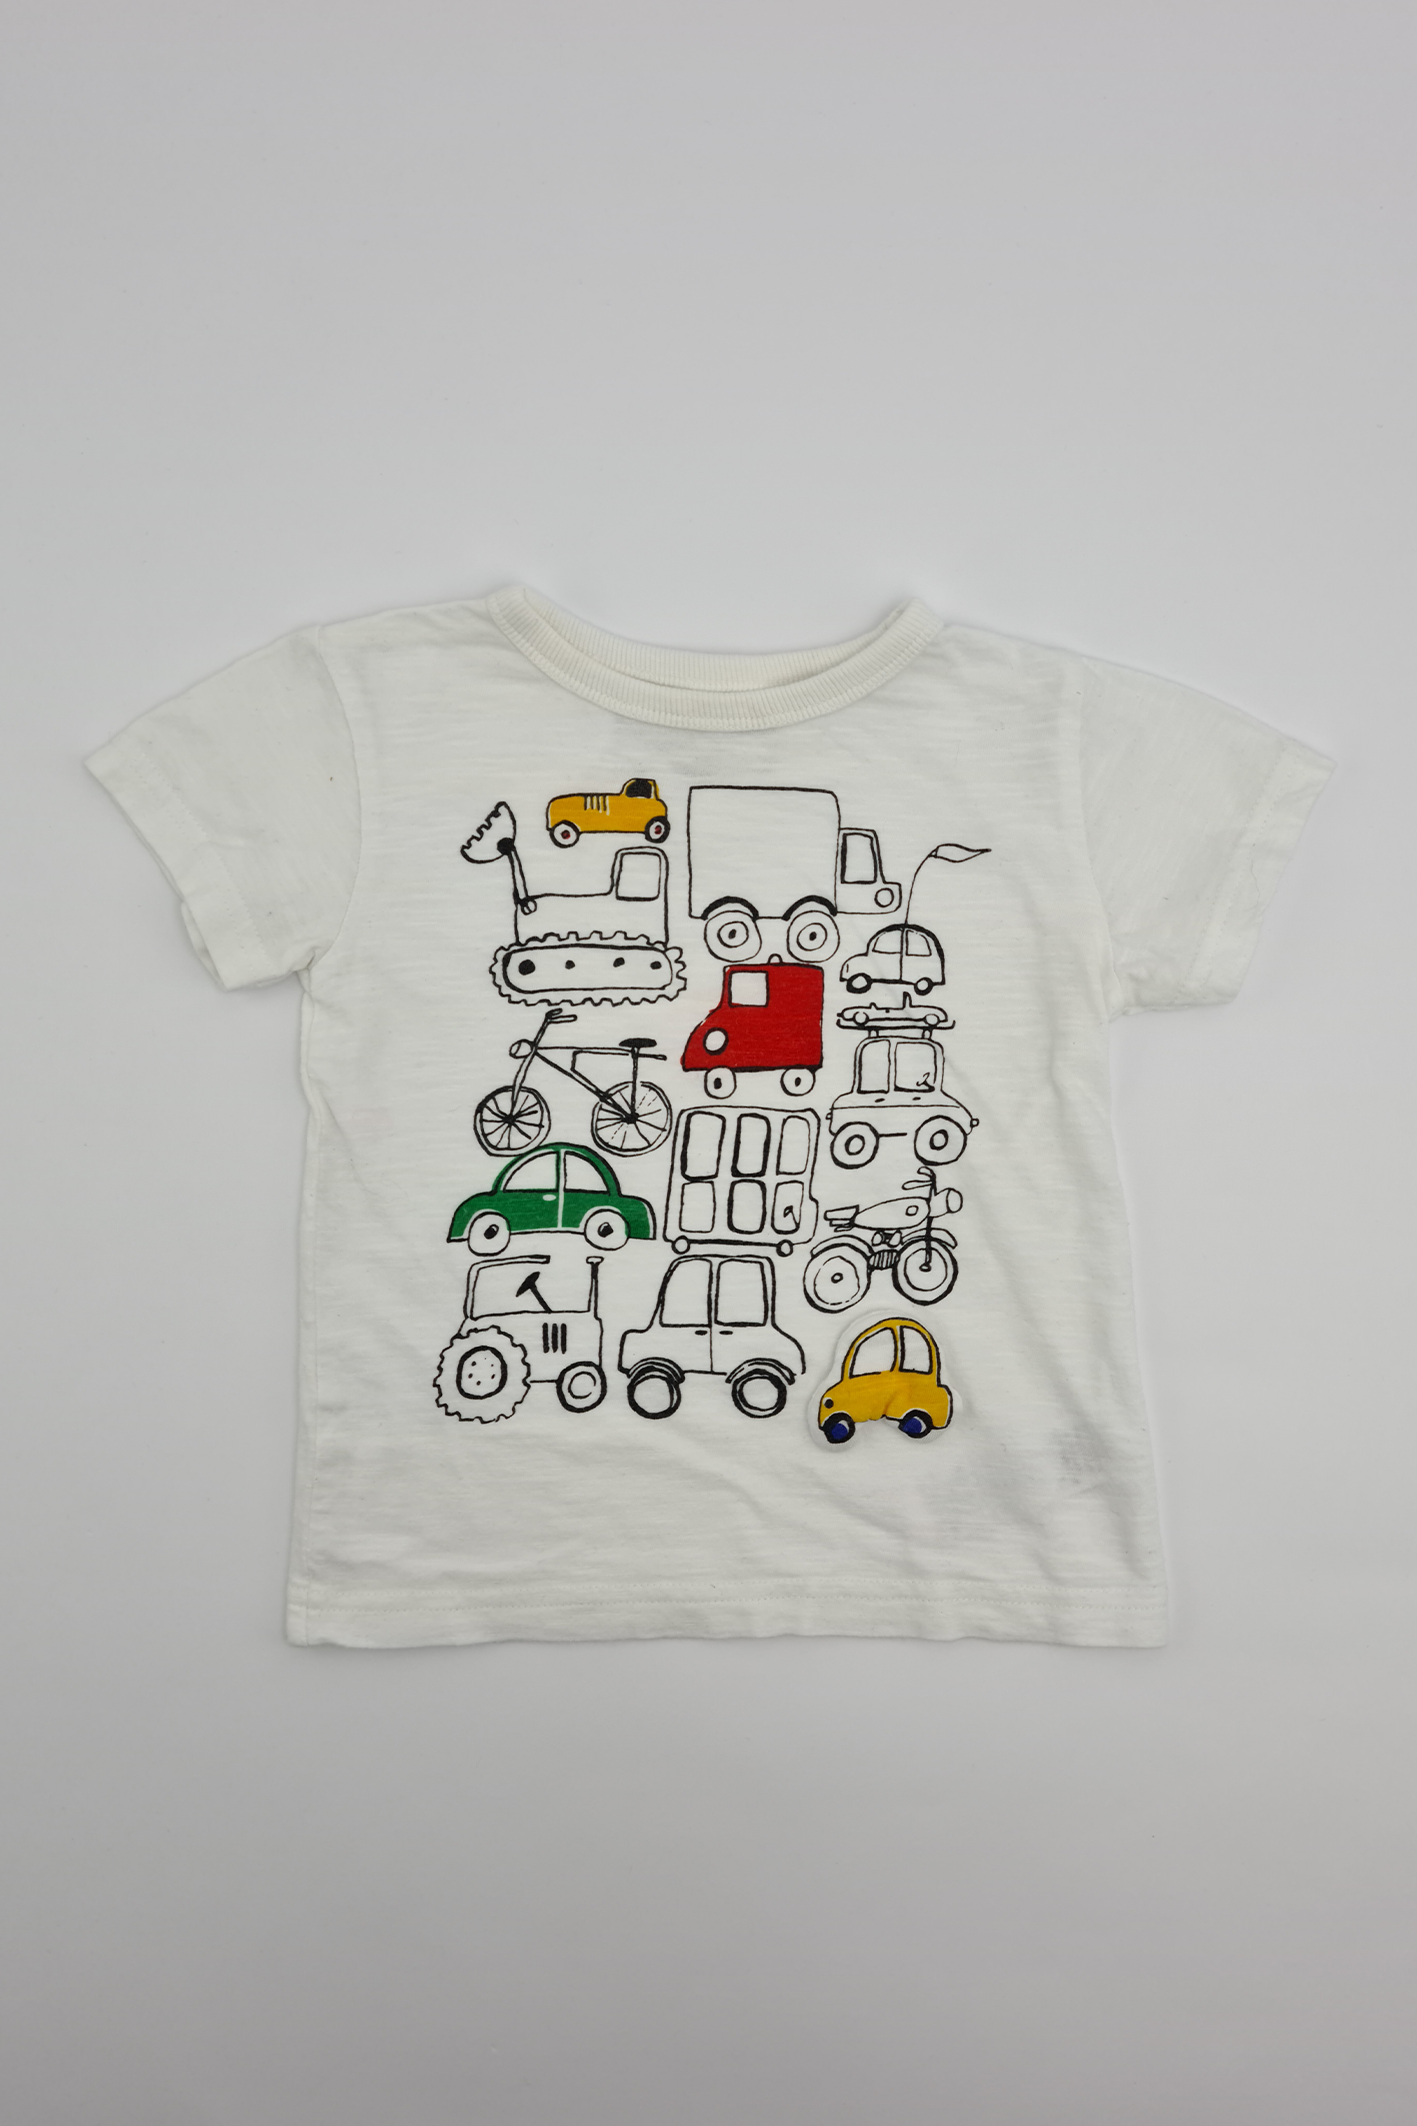 Car T-shirt - Precuddled.com